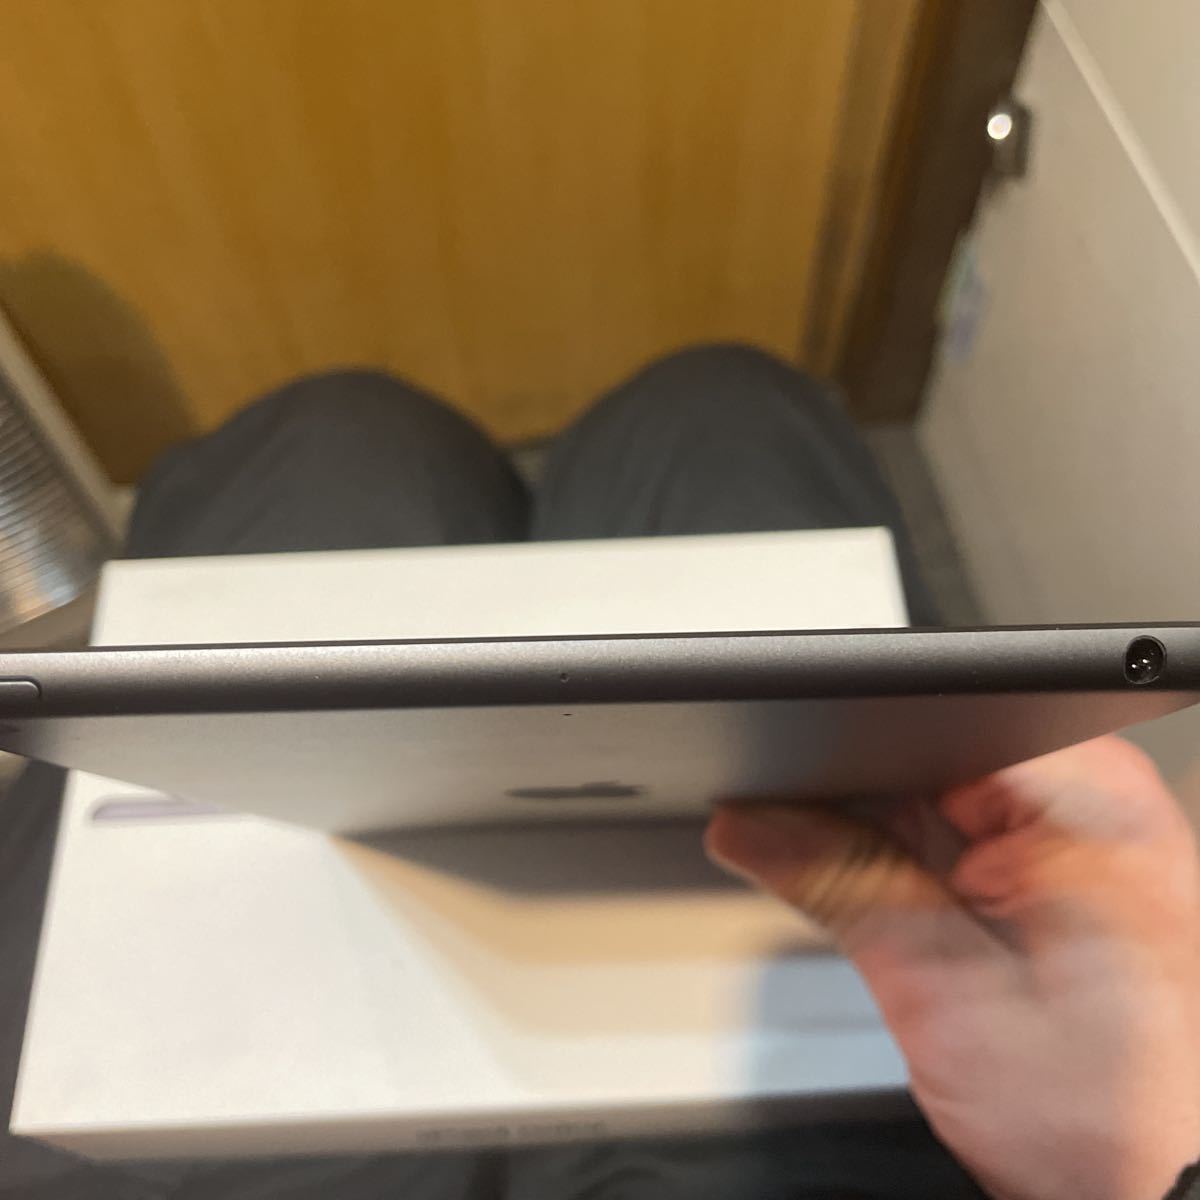 日本購入 iPad iPad mini Wi-Fi 第5世代スペースグレイ 64GB